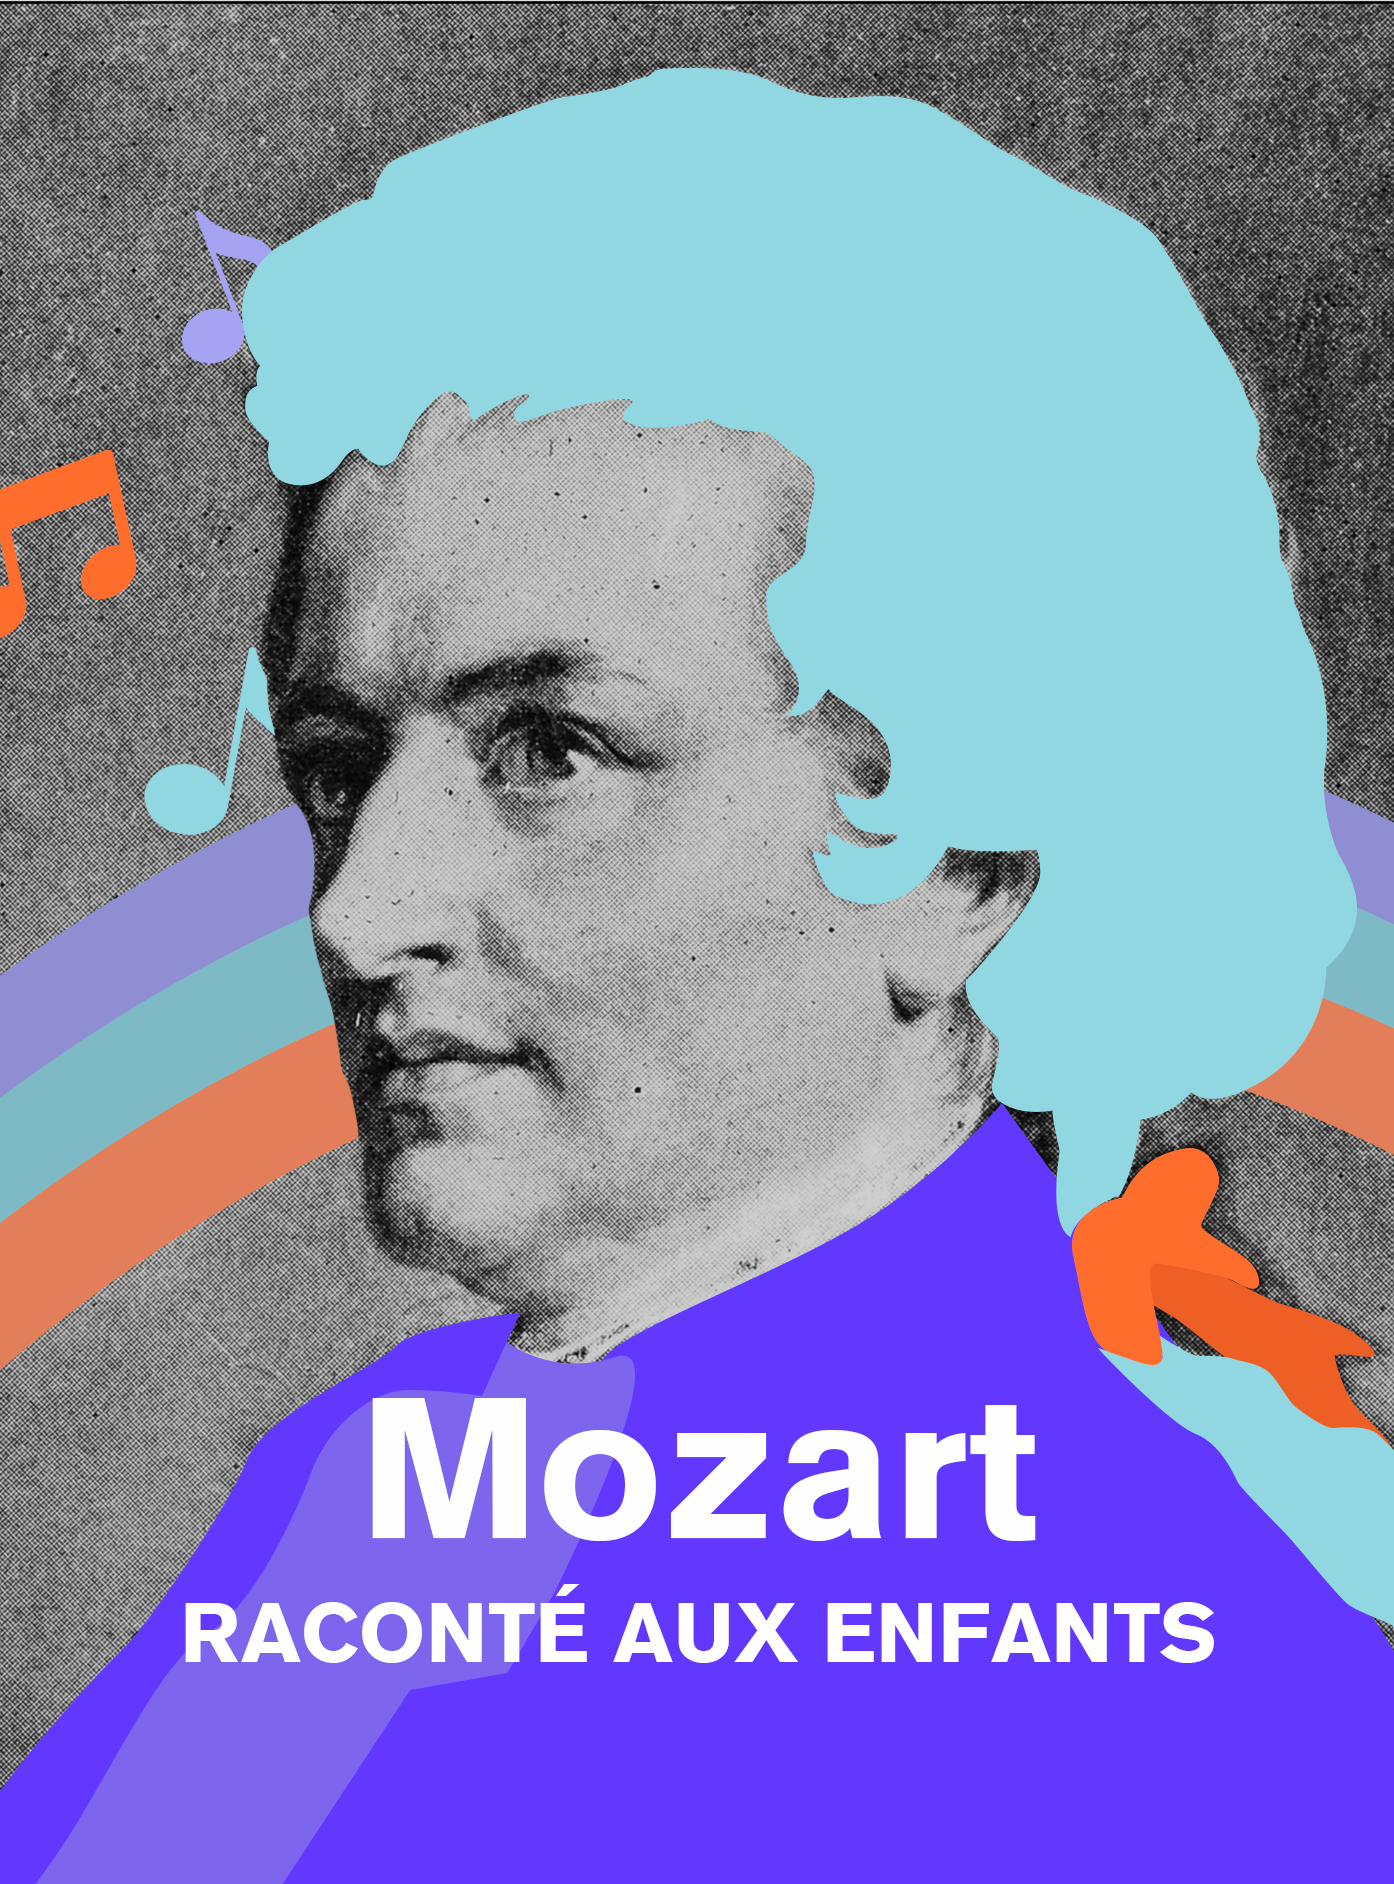 Mozart, raconté aux enfants